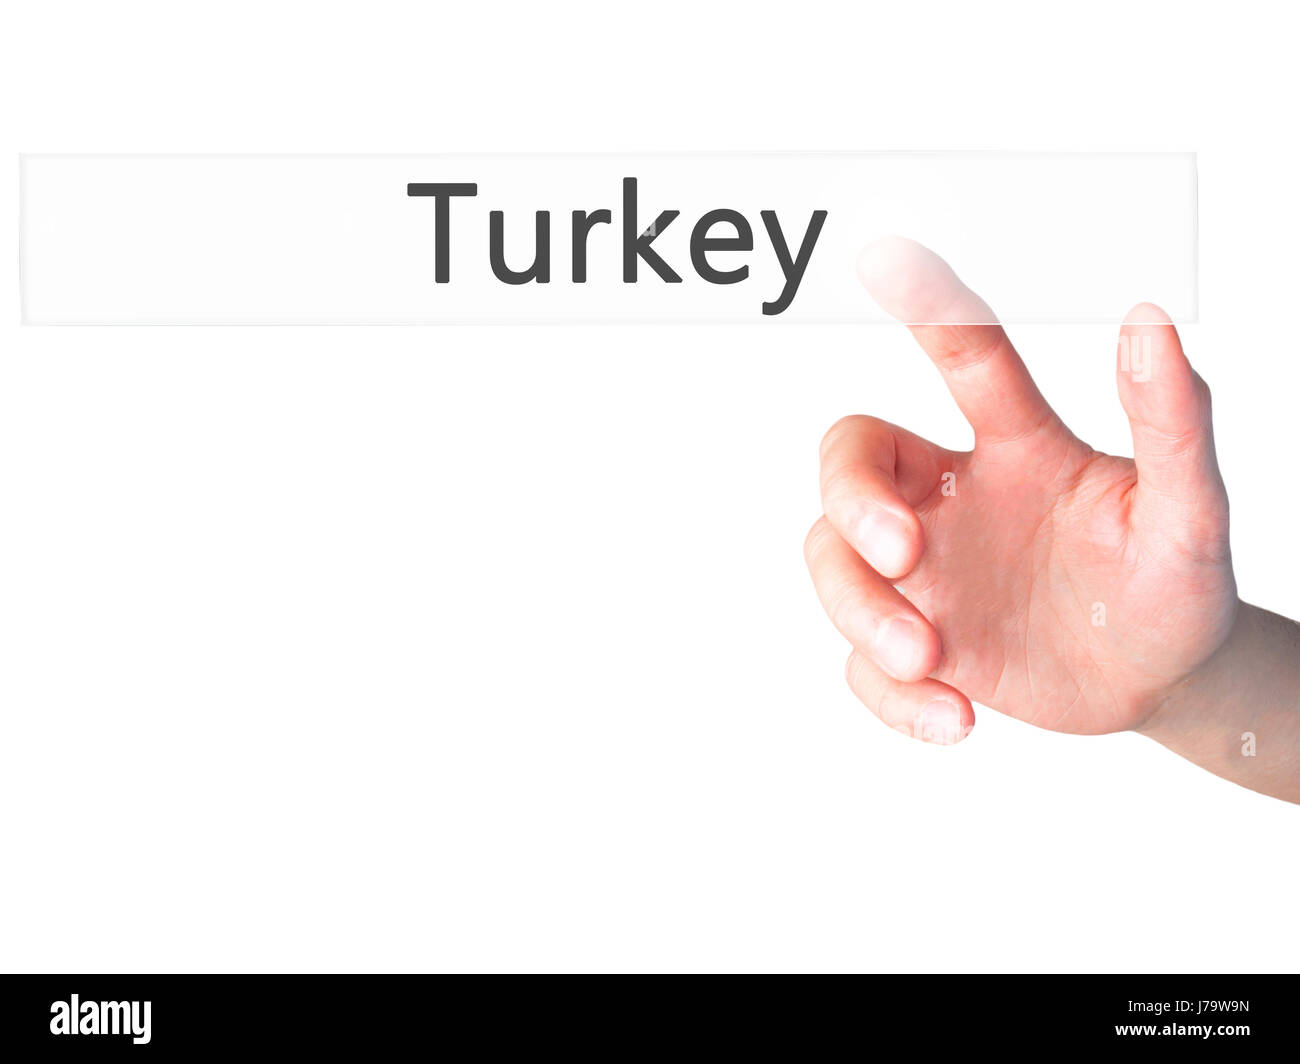 Türkei - Hand drücken einer Taste auf unscharfen Hintergrund Konzept. Wirtschaft, Technologie, Internet-Konzept. Stock Foto Stockfoto